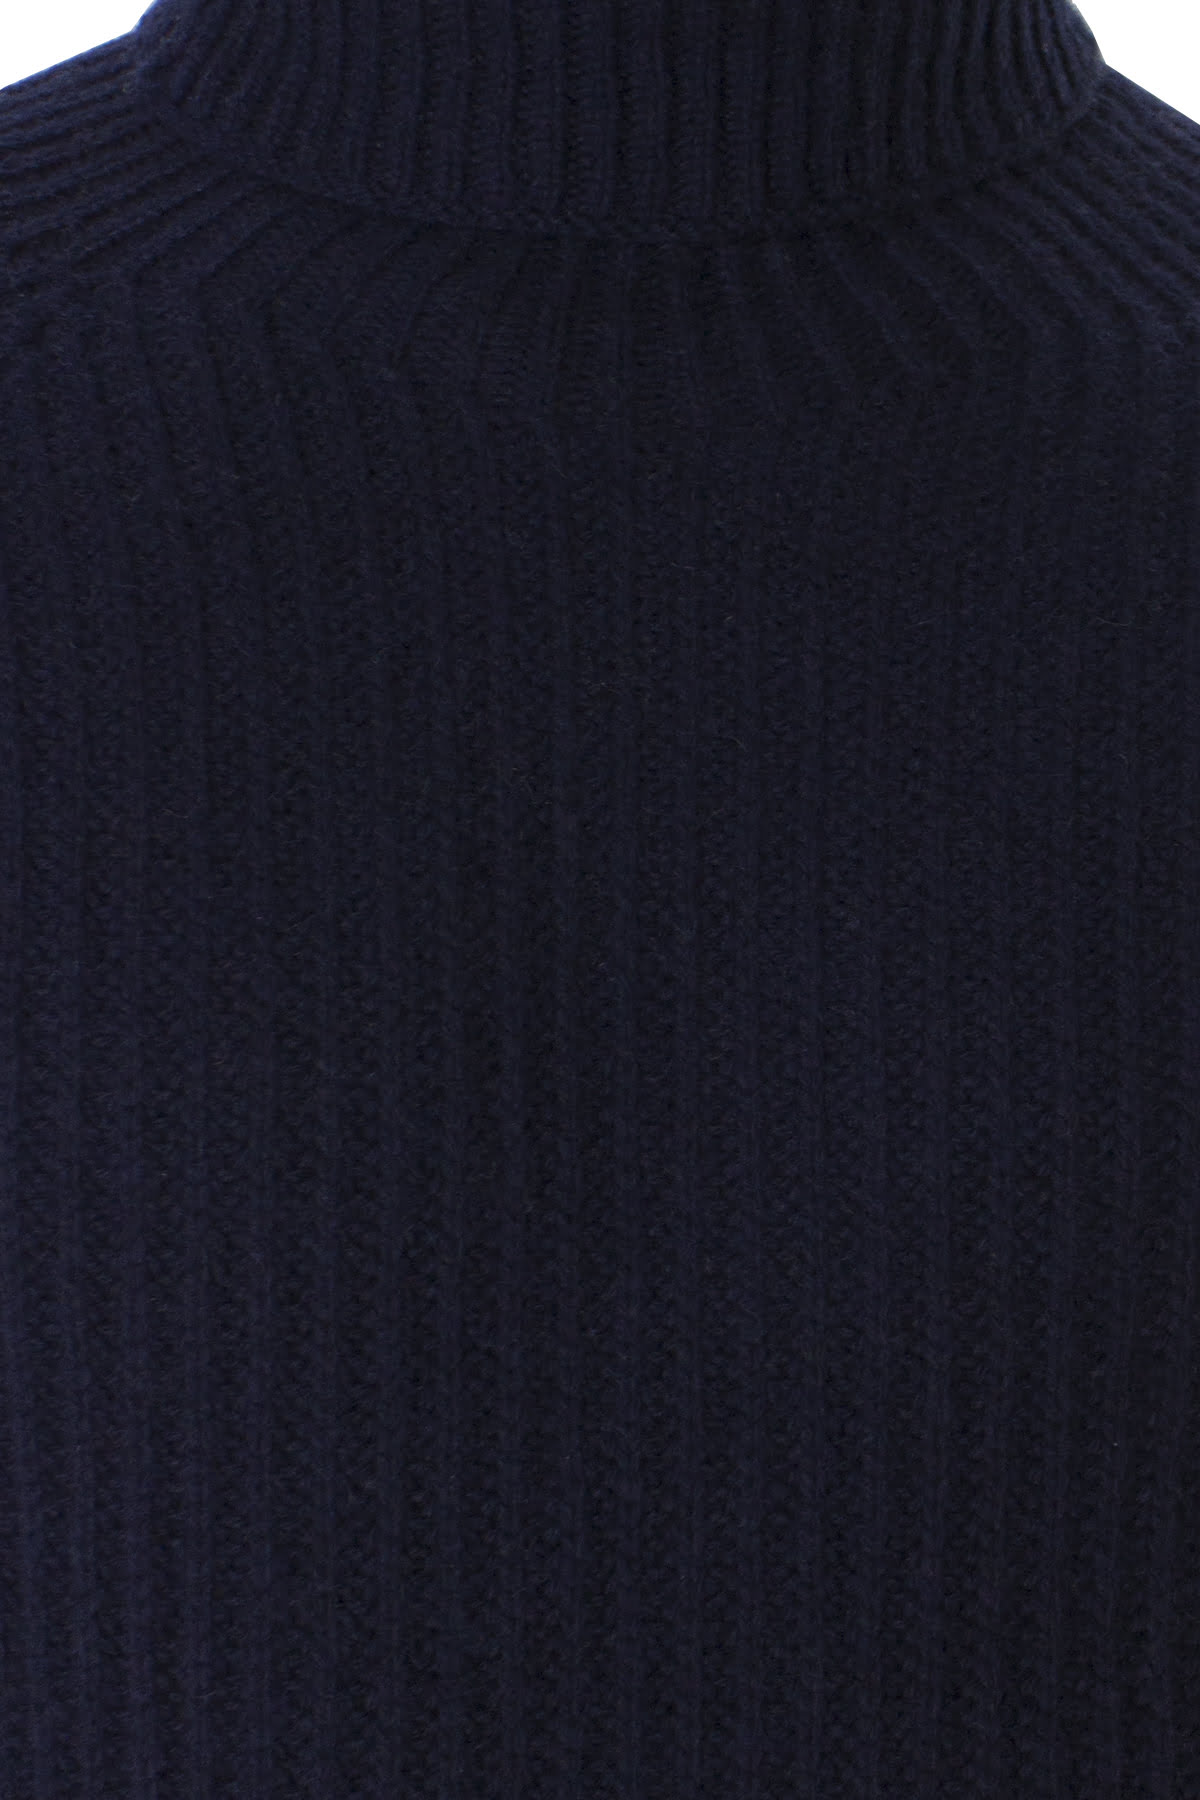 Maglione uomo collo alto Blu in lana merinos a costa inglese slim fit made in italy